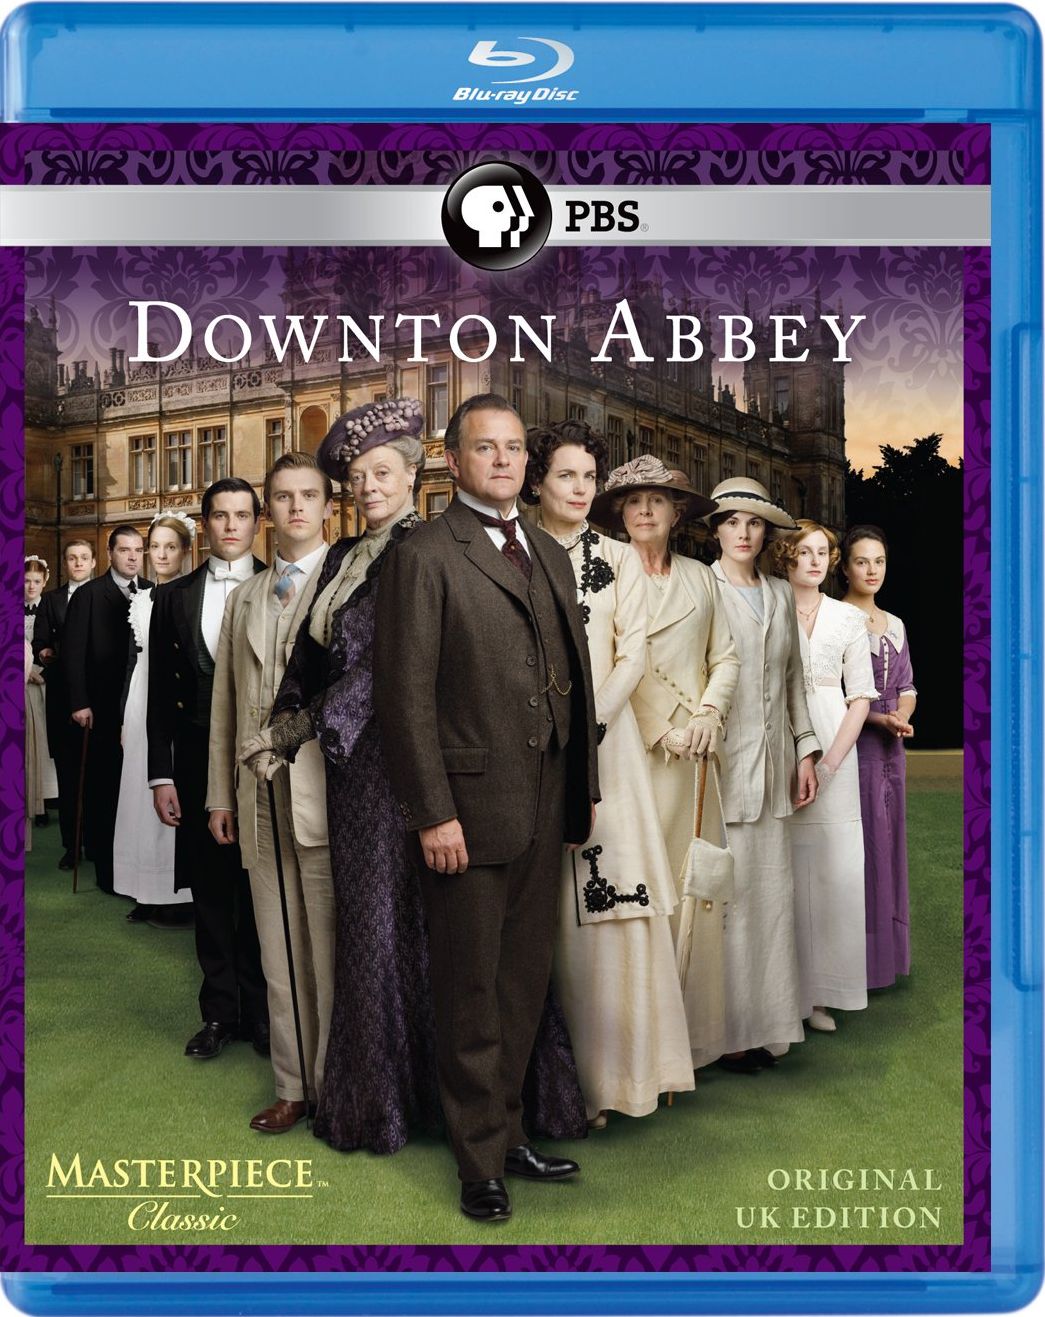 Downton Abbey DVD Release Date